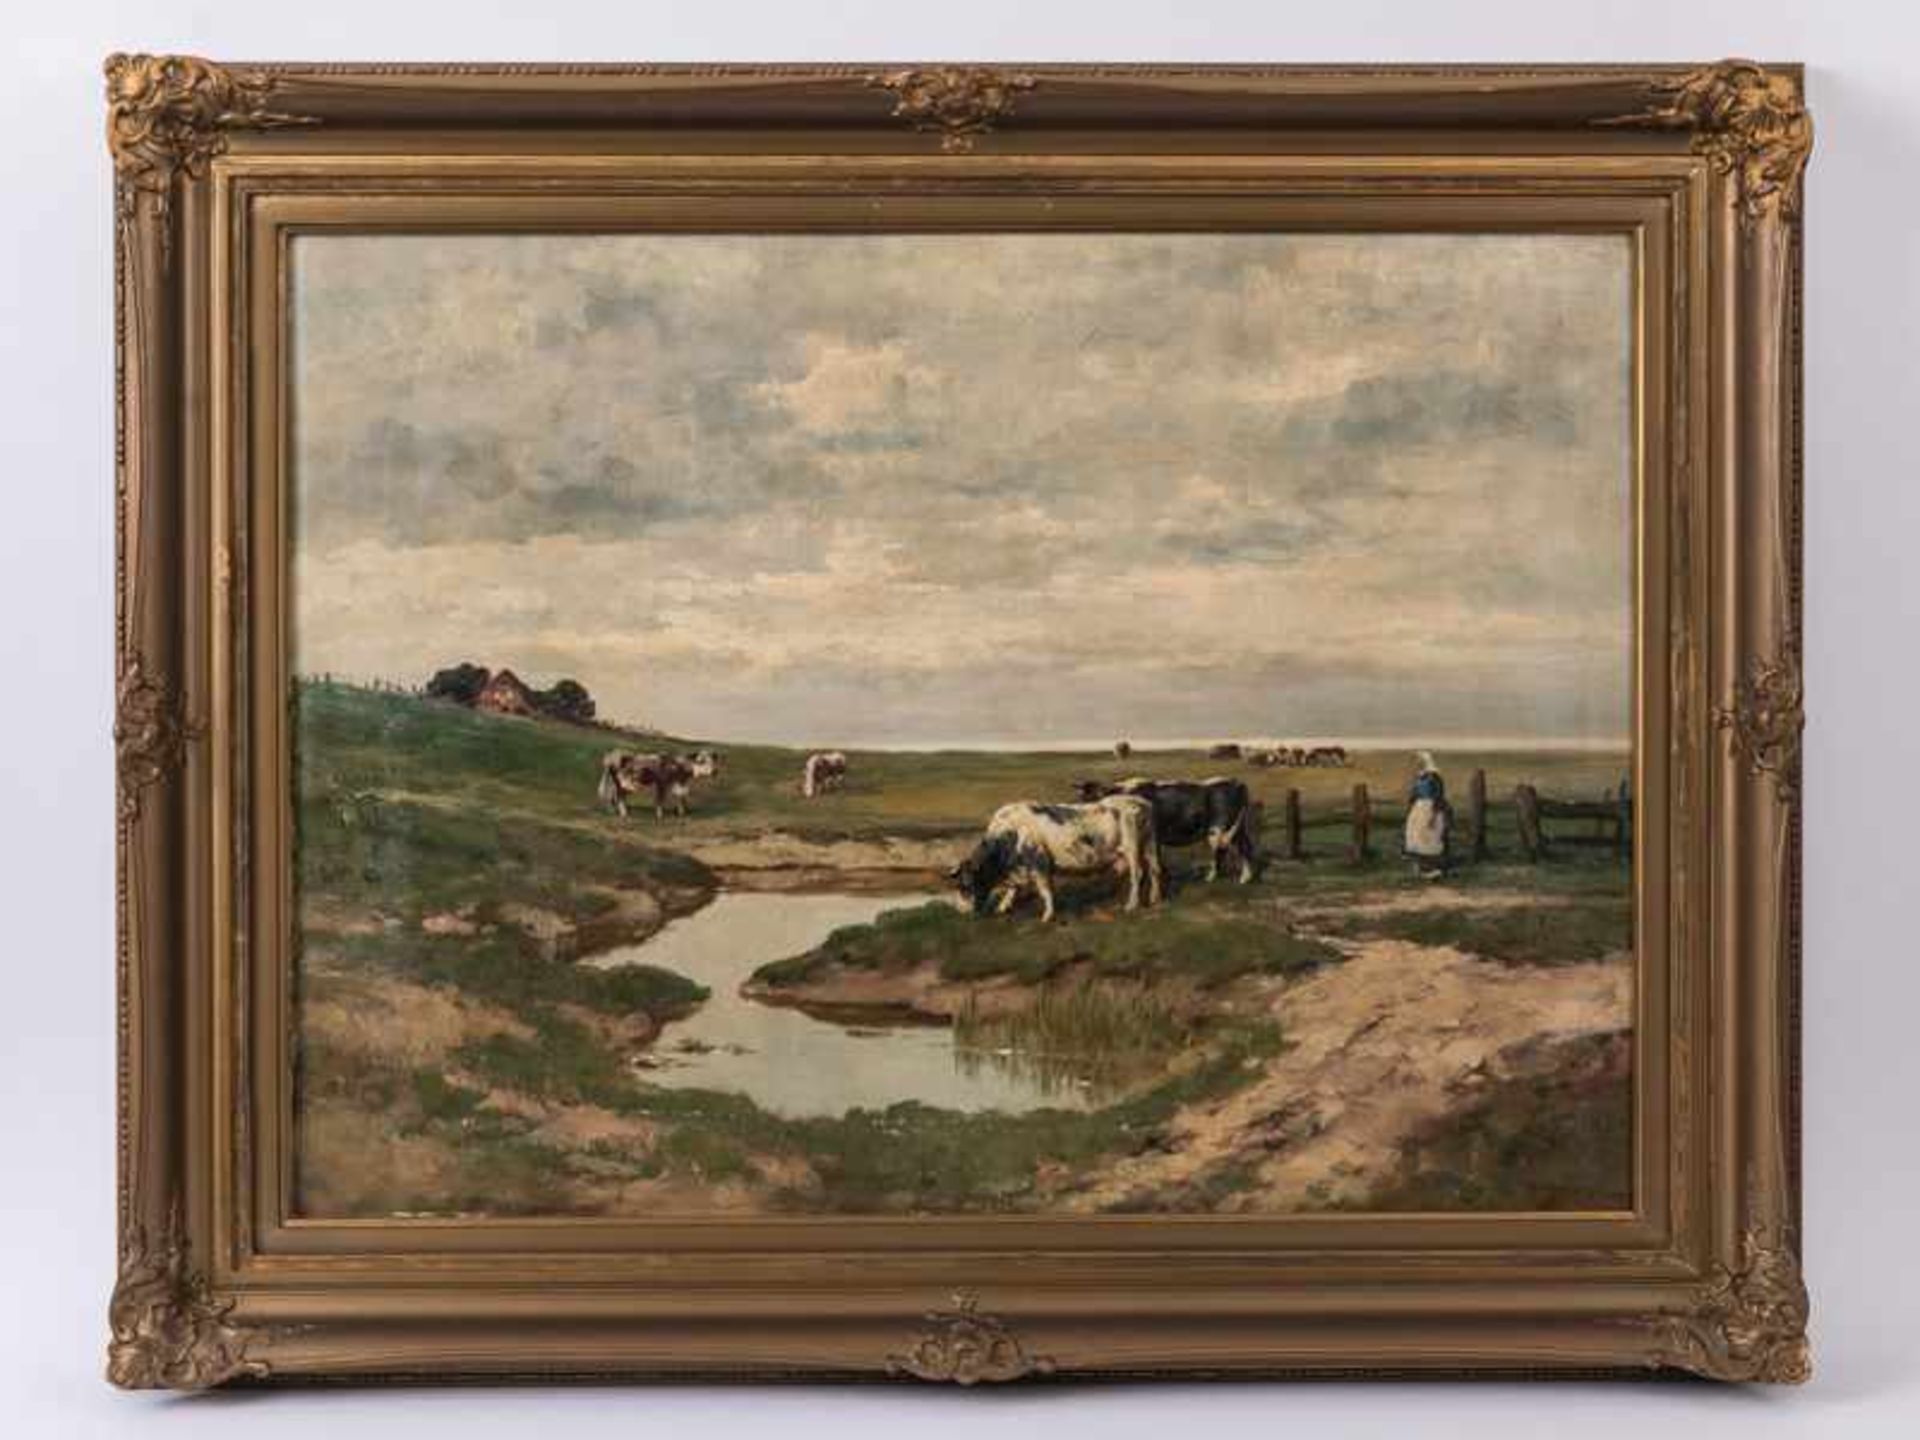 Metzler, Jan (Landschaftsmaler des 19./20. Jh.). Öl auf Leinwand. "Weite nordfriesische